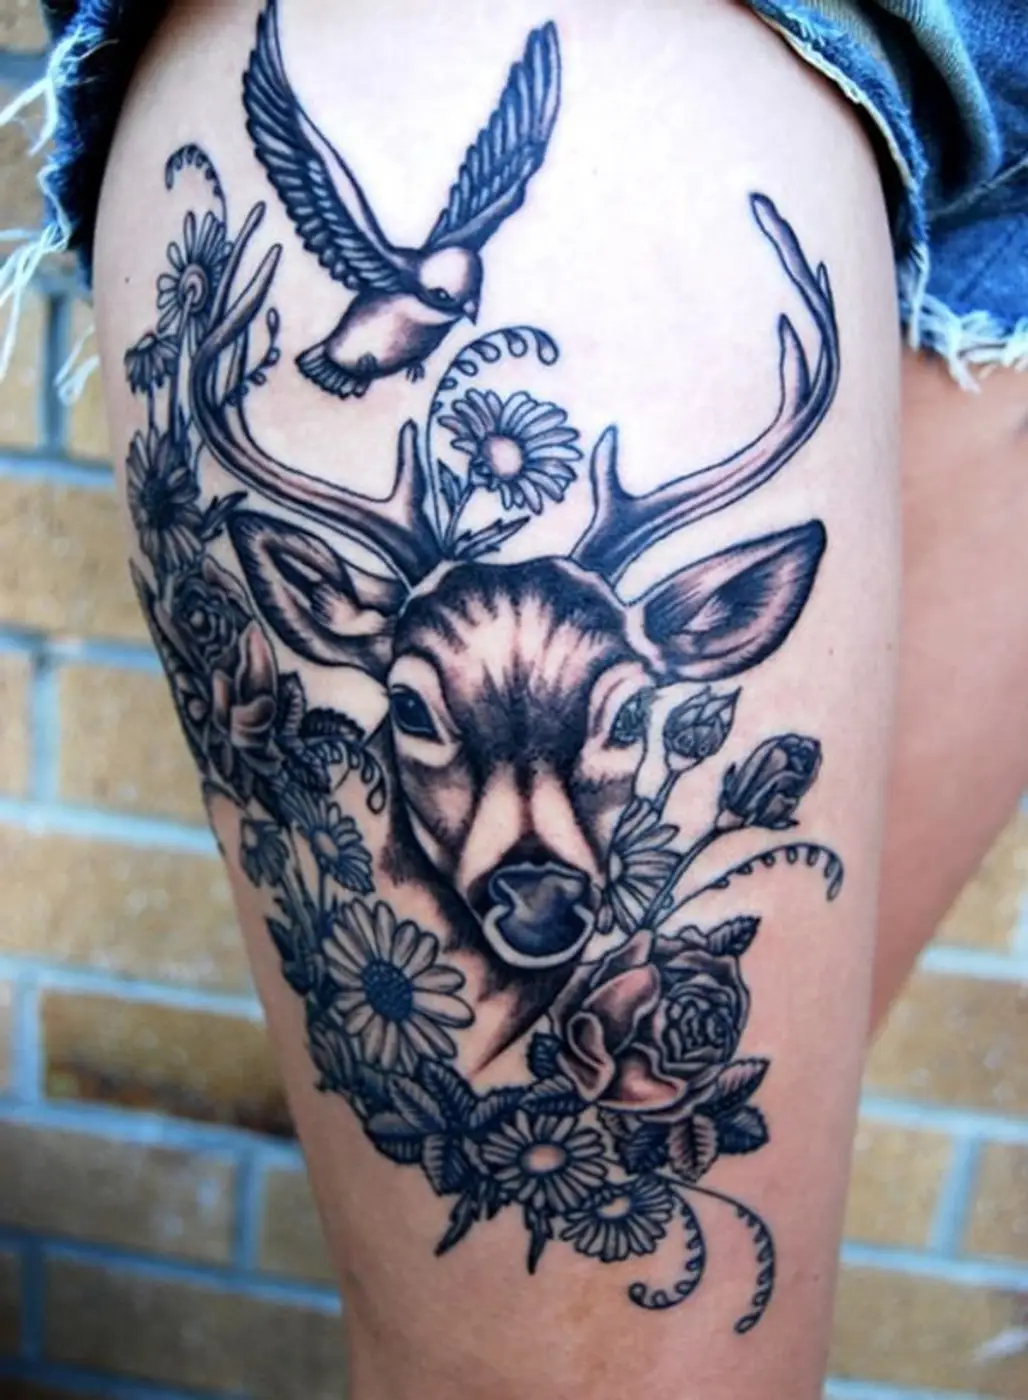 tattoo,arm,pattern,design,tattoo artist,